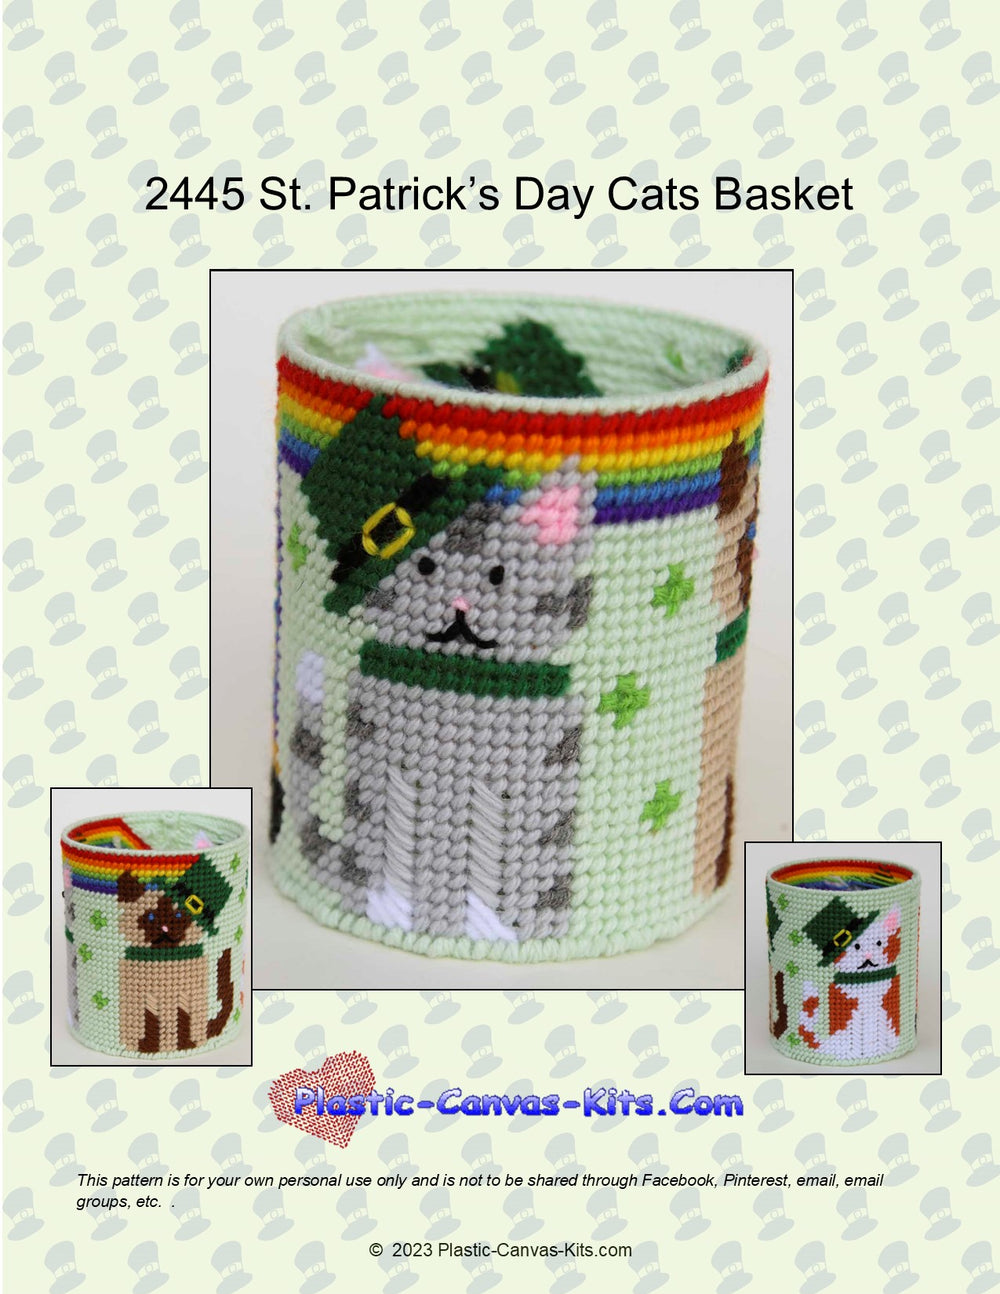 St. Patrick's Day Cats Basket